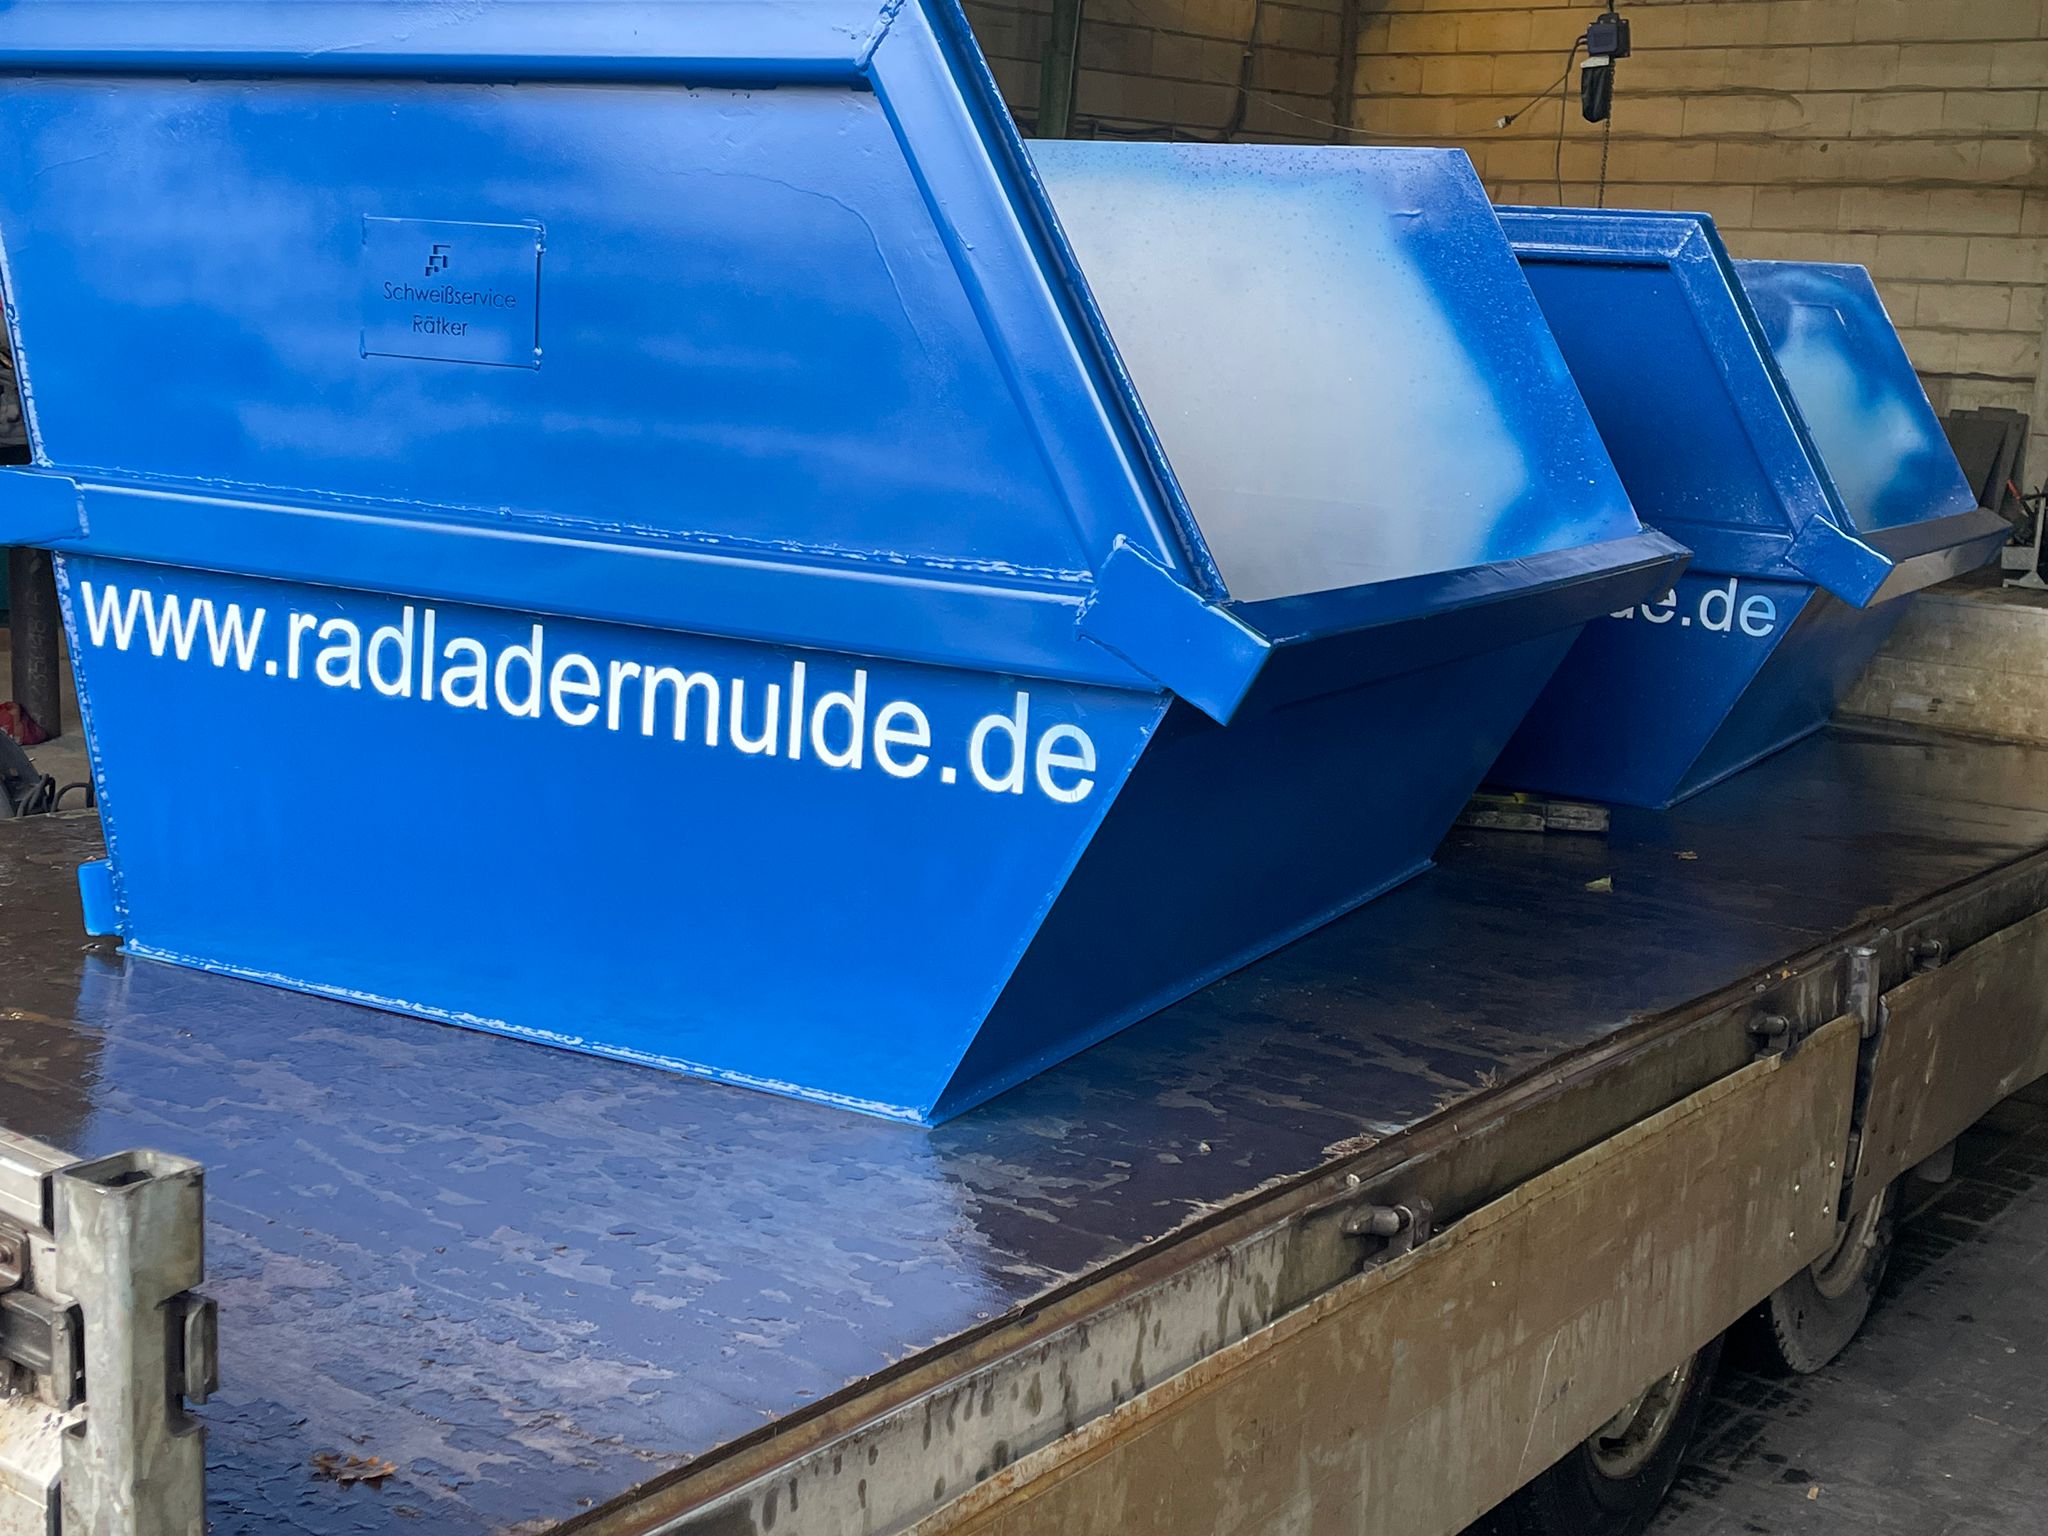 //baggermulde.de/wp-content/uploads/2022/02/radladermulde-blau-anlieferung.jpg